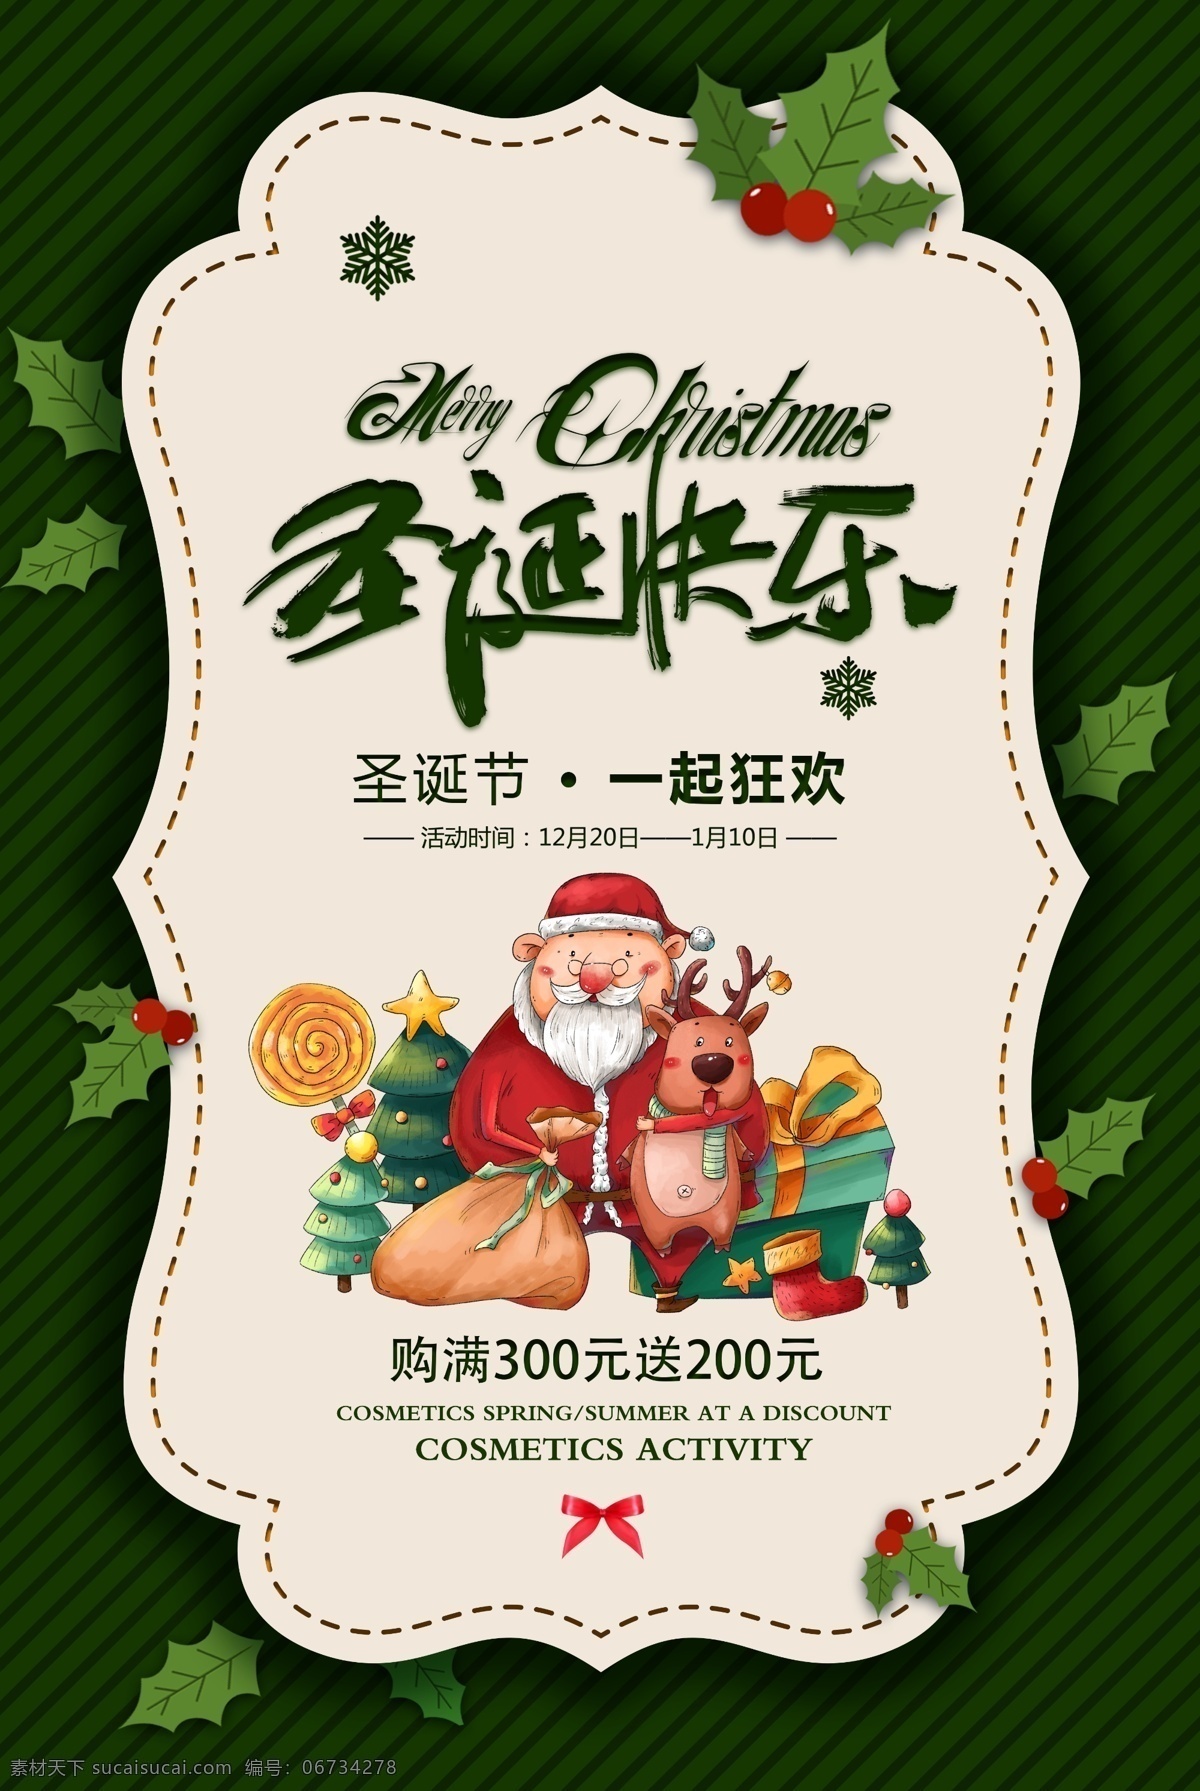 圣诞快乐 活动 促销 宣传海报 素材图片 宣传 海报 传统节日